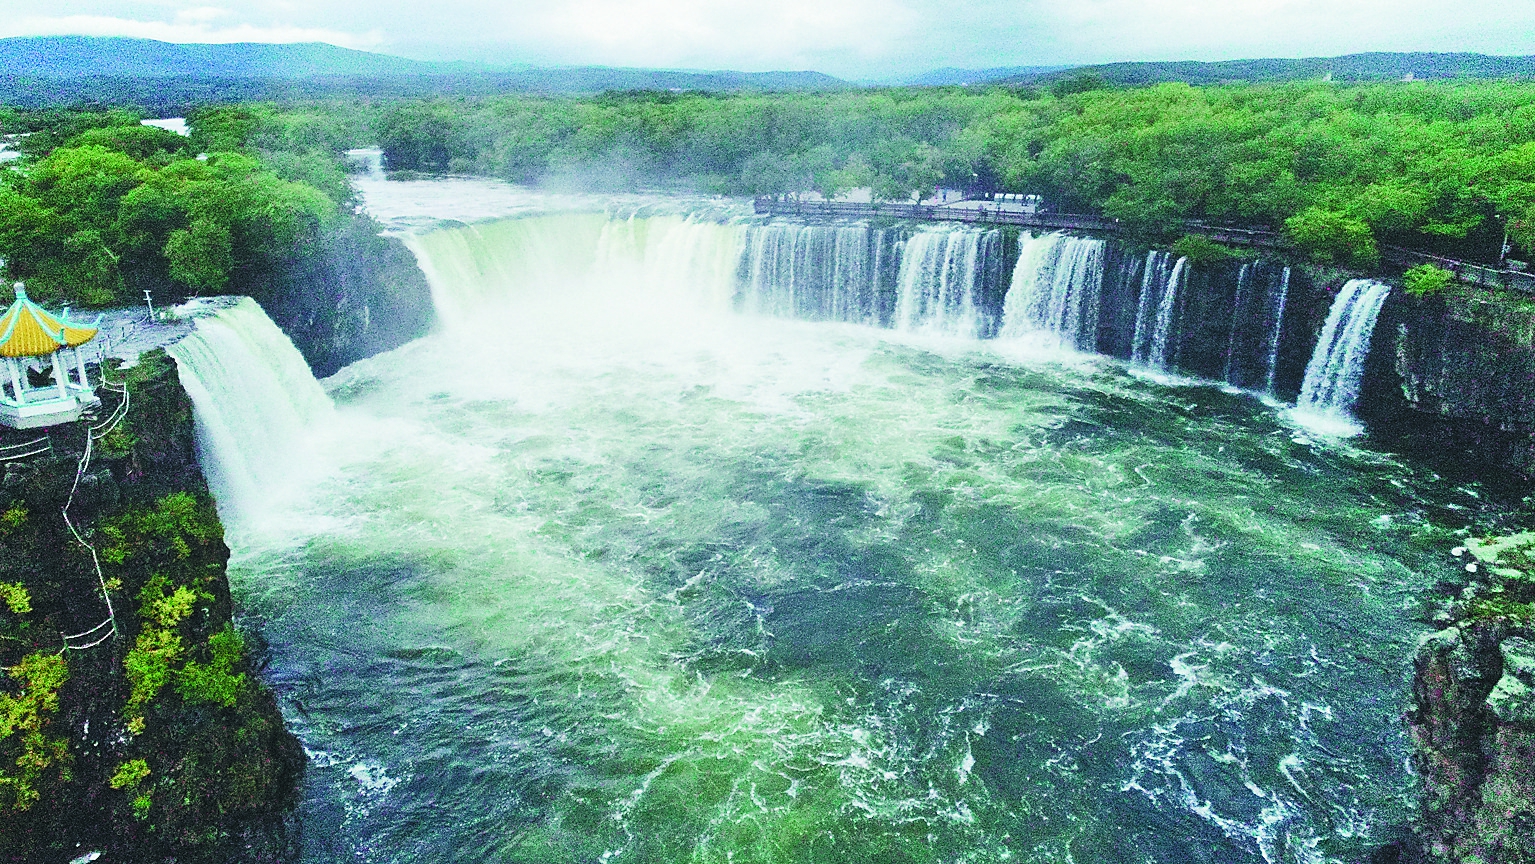 世界地质公园镜泊湖景区吊水楼瀑布出现大范围溢流,形成上百米宽